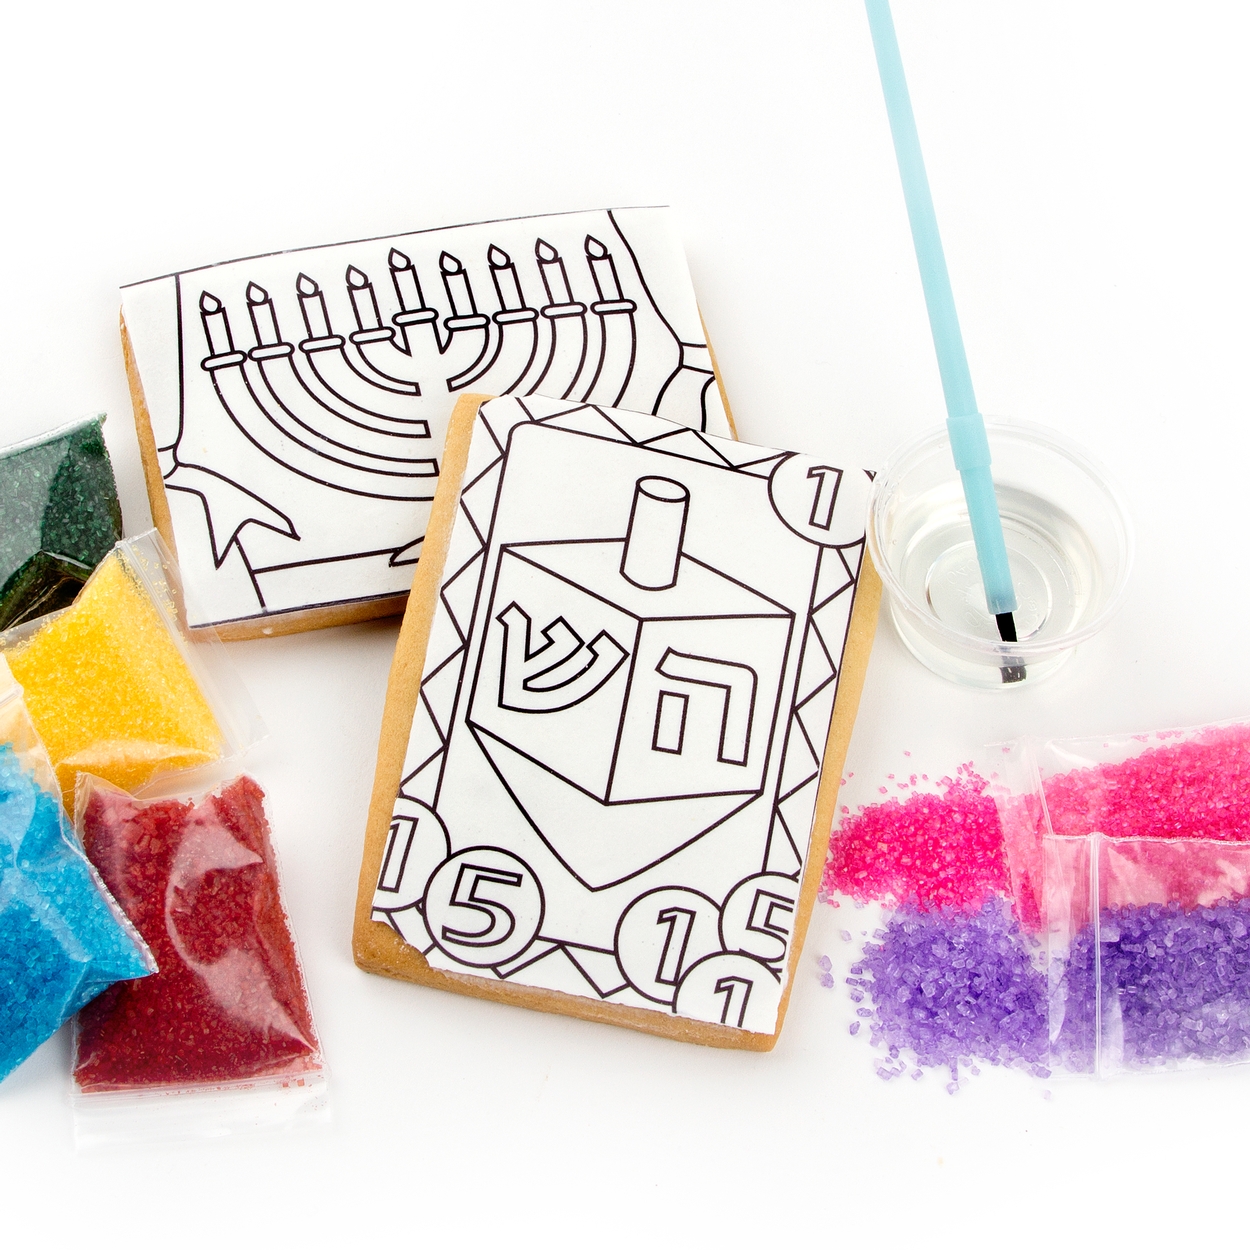 Chanukah Sugar Art Cookie Kit - $13.79